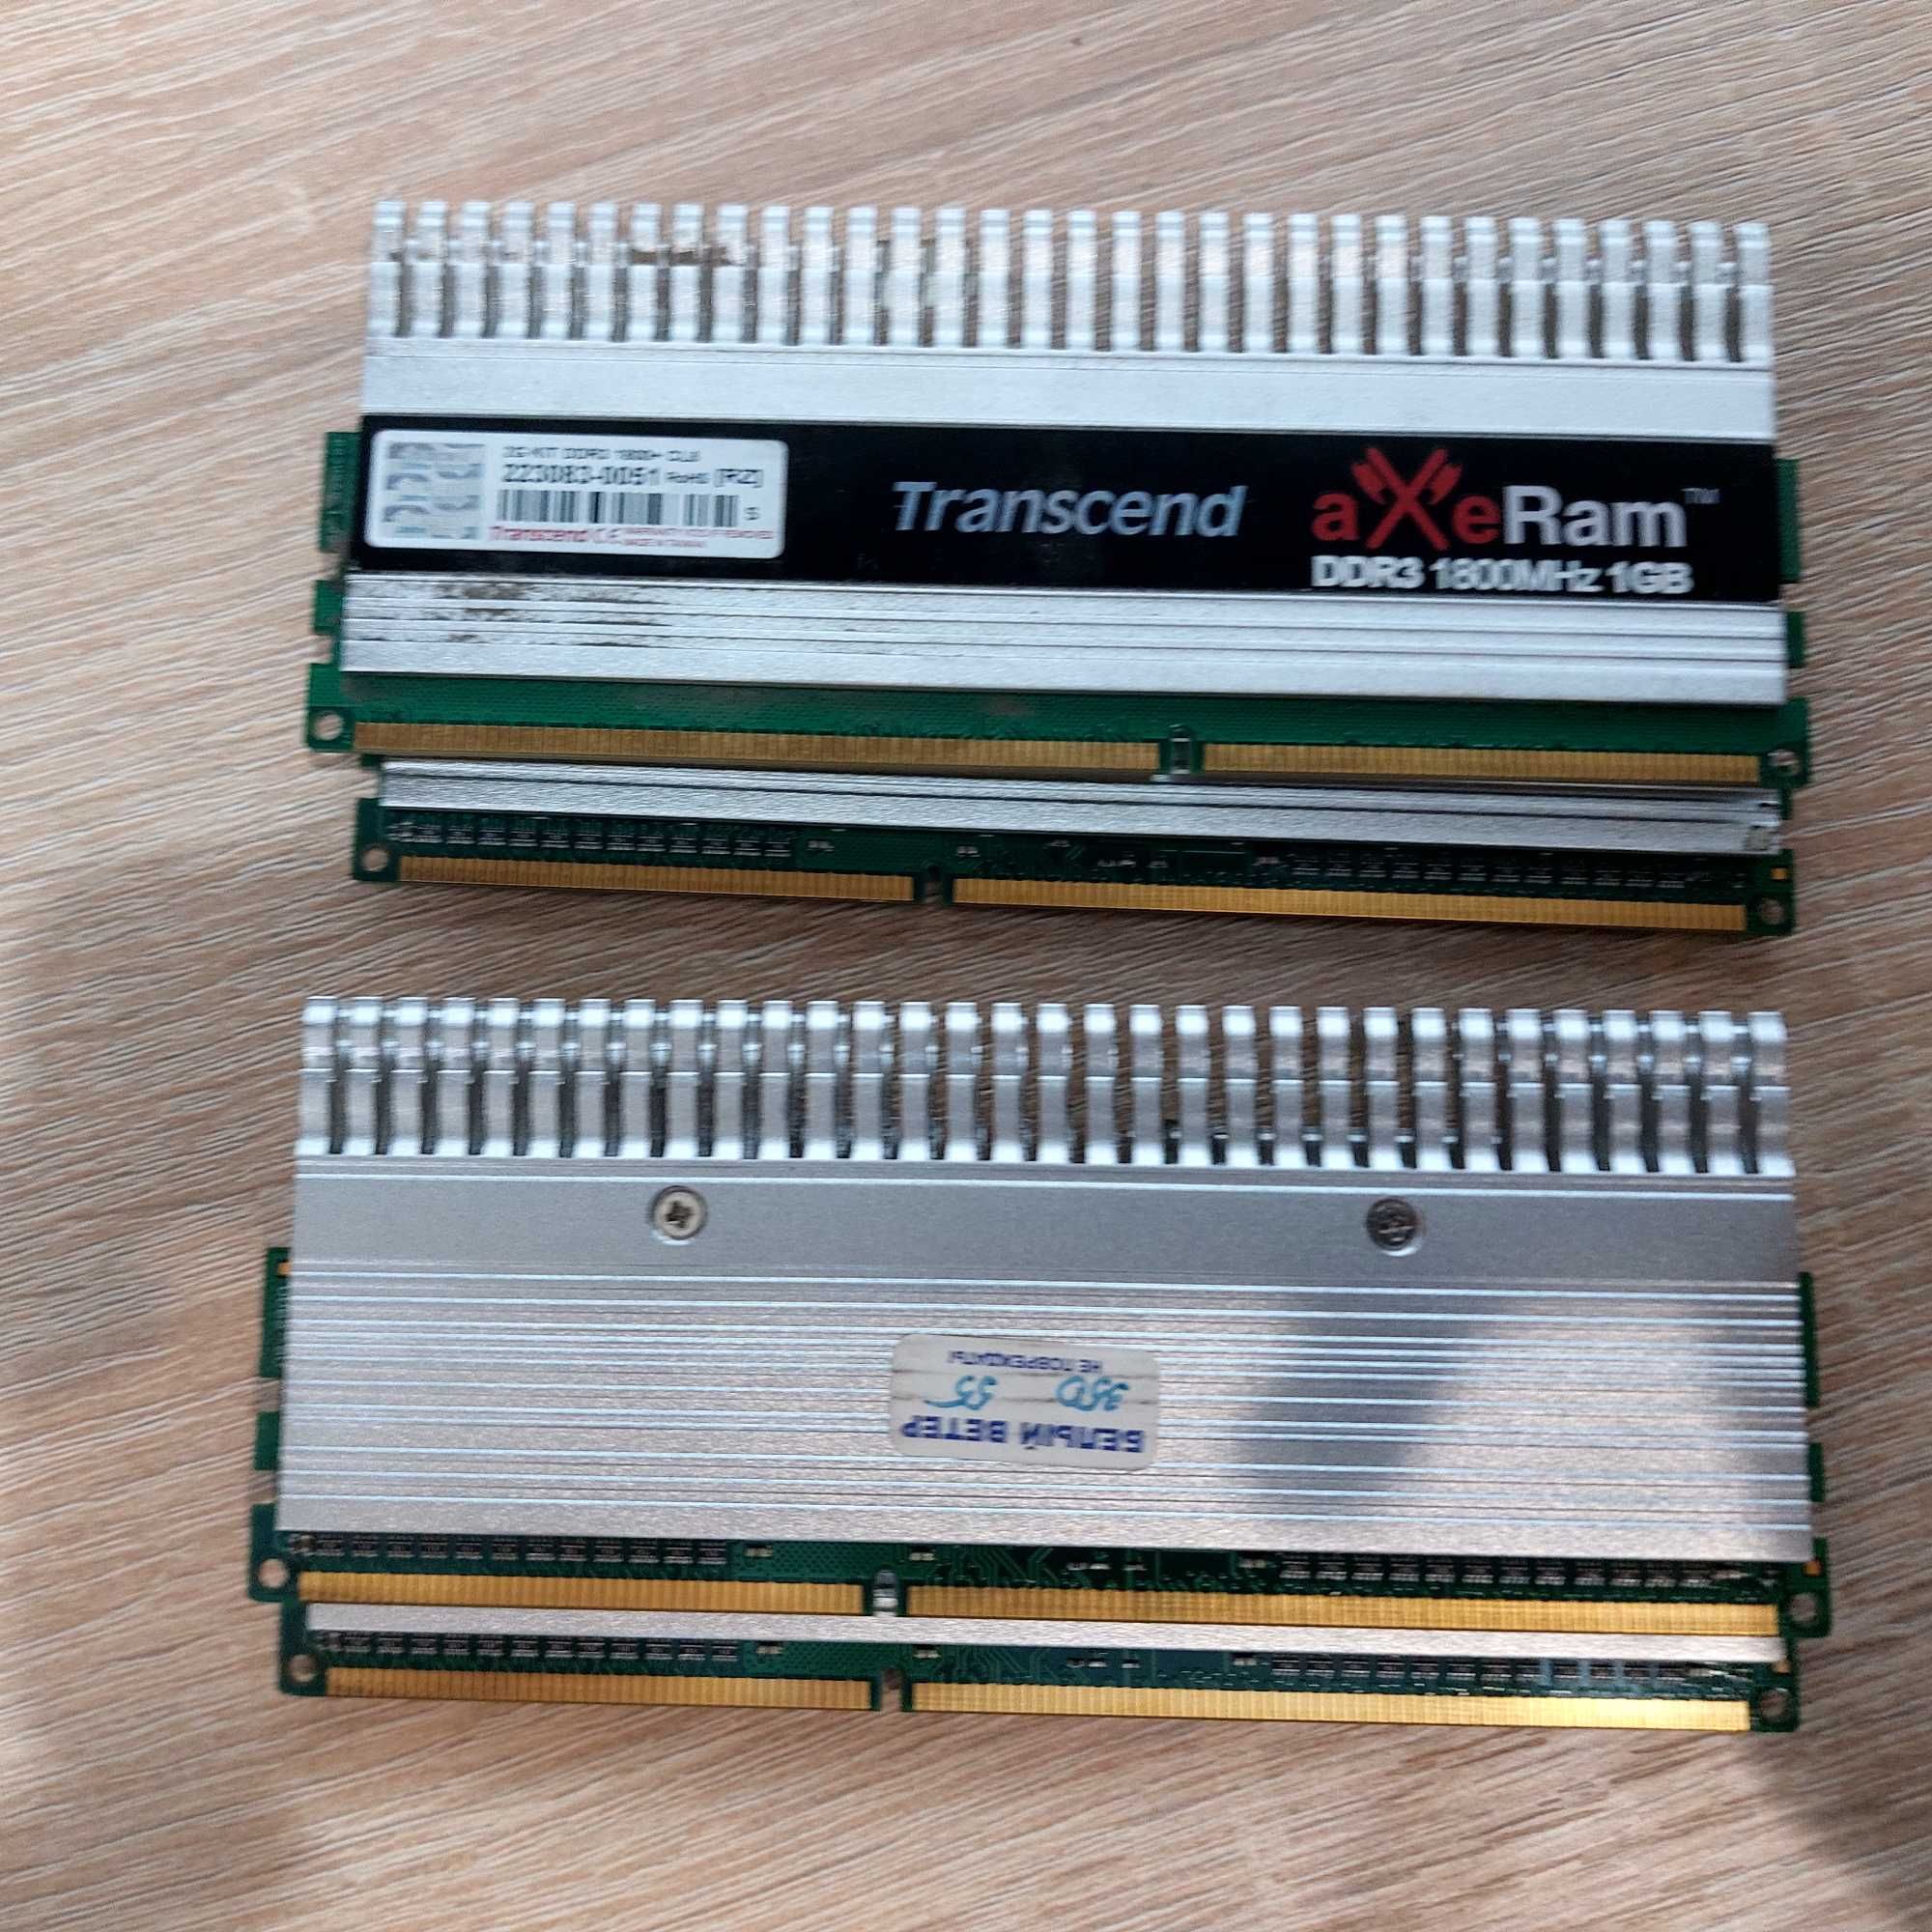 DDR2 512МБ-2ГБ, DDR3 2ГБ-4ГБ